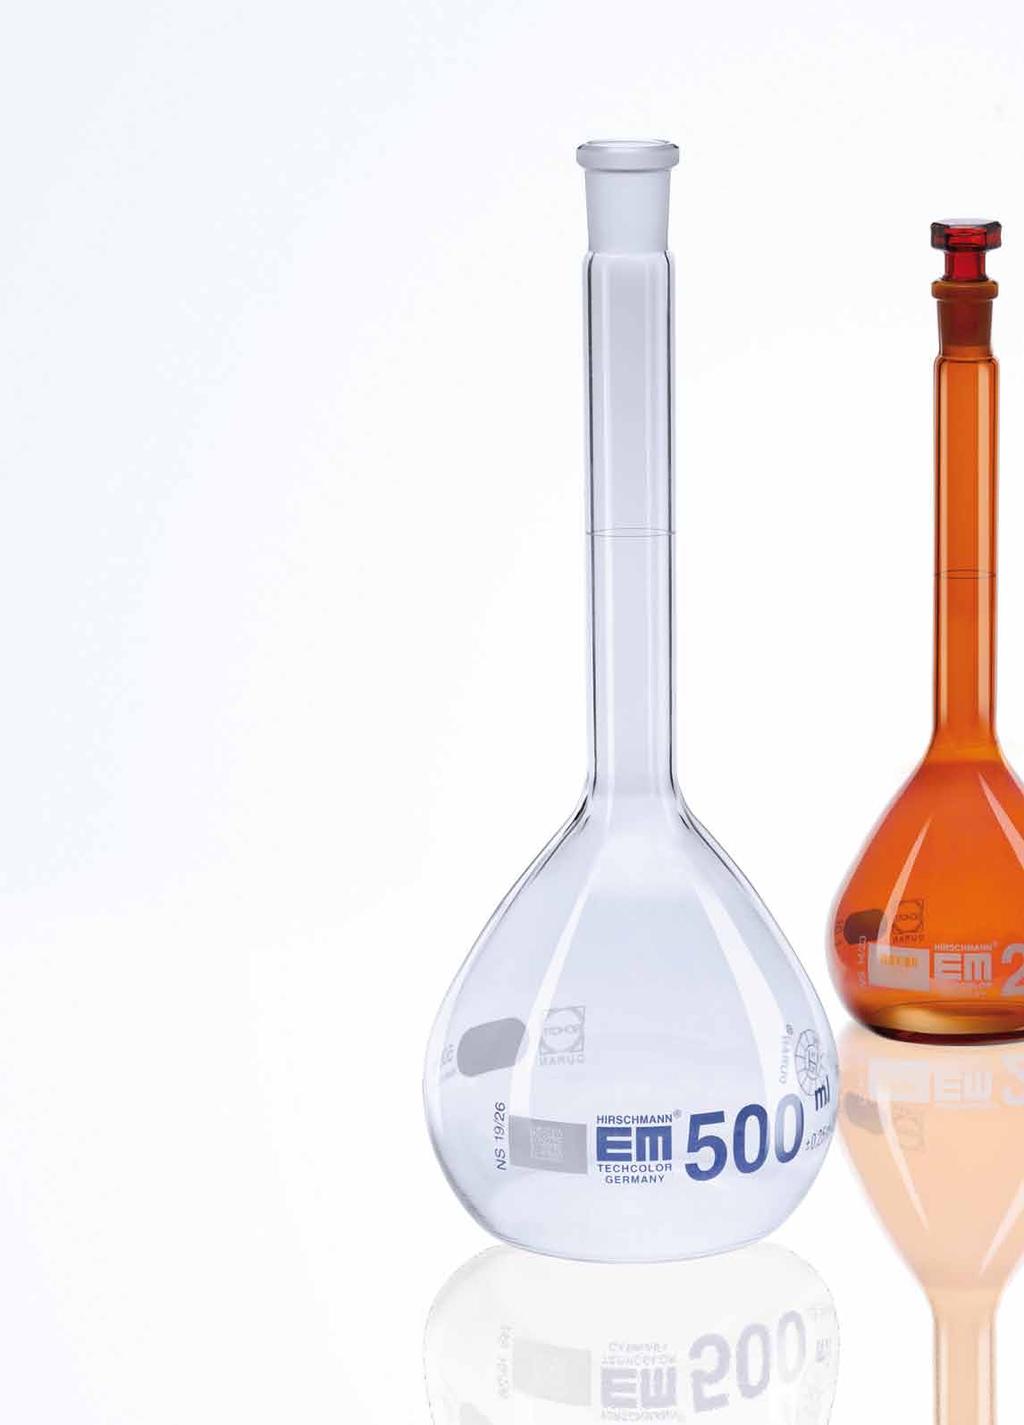 EM Techcolor glasklare Qualität, anwenderorientierte Innovationen Glas ist ein ganz besonderes Material. Es vereint zahlreiche Eigenschaften, die für die Arbeit im Labor ideal sind.